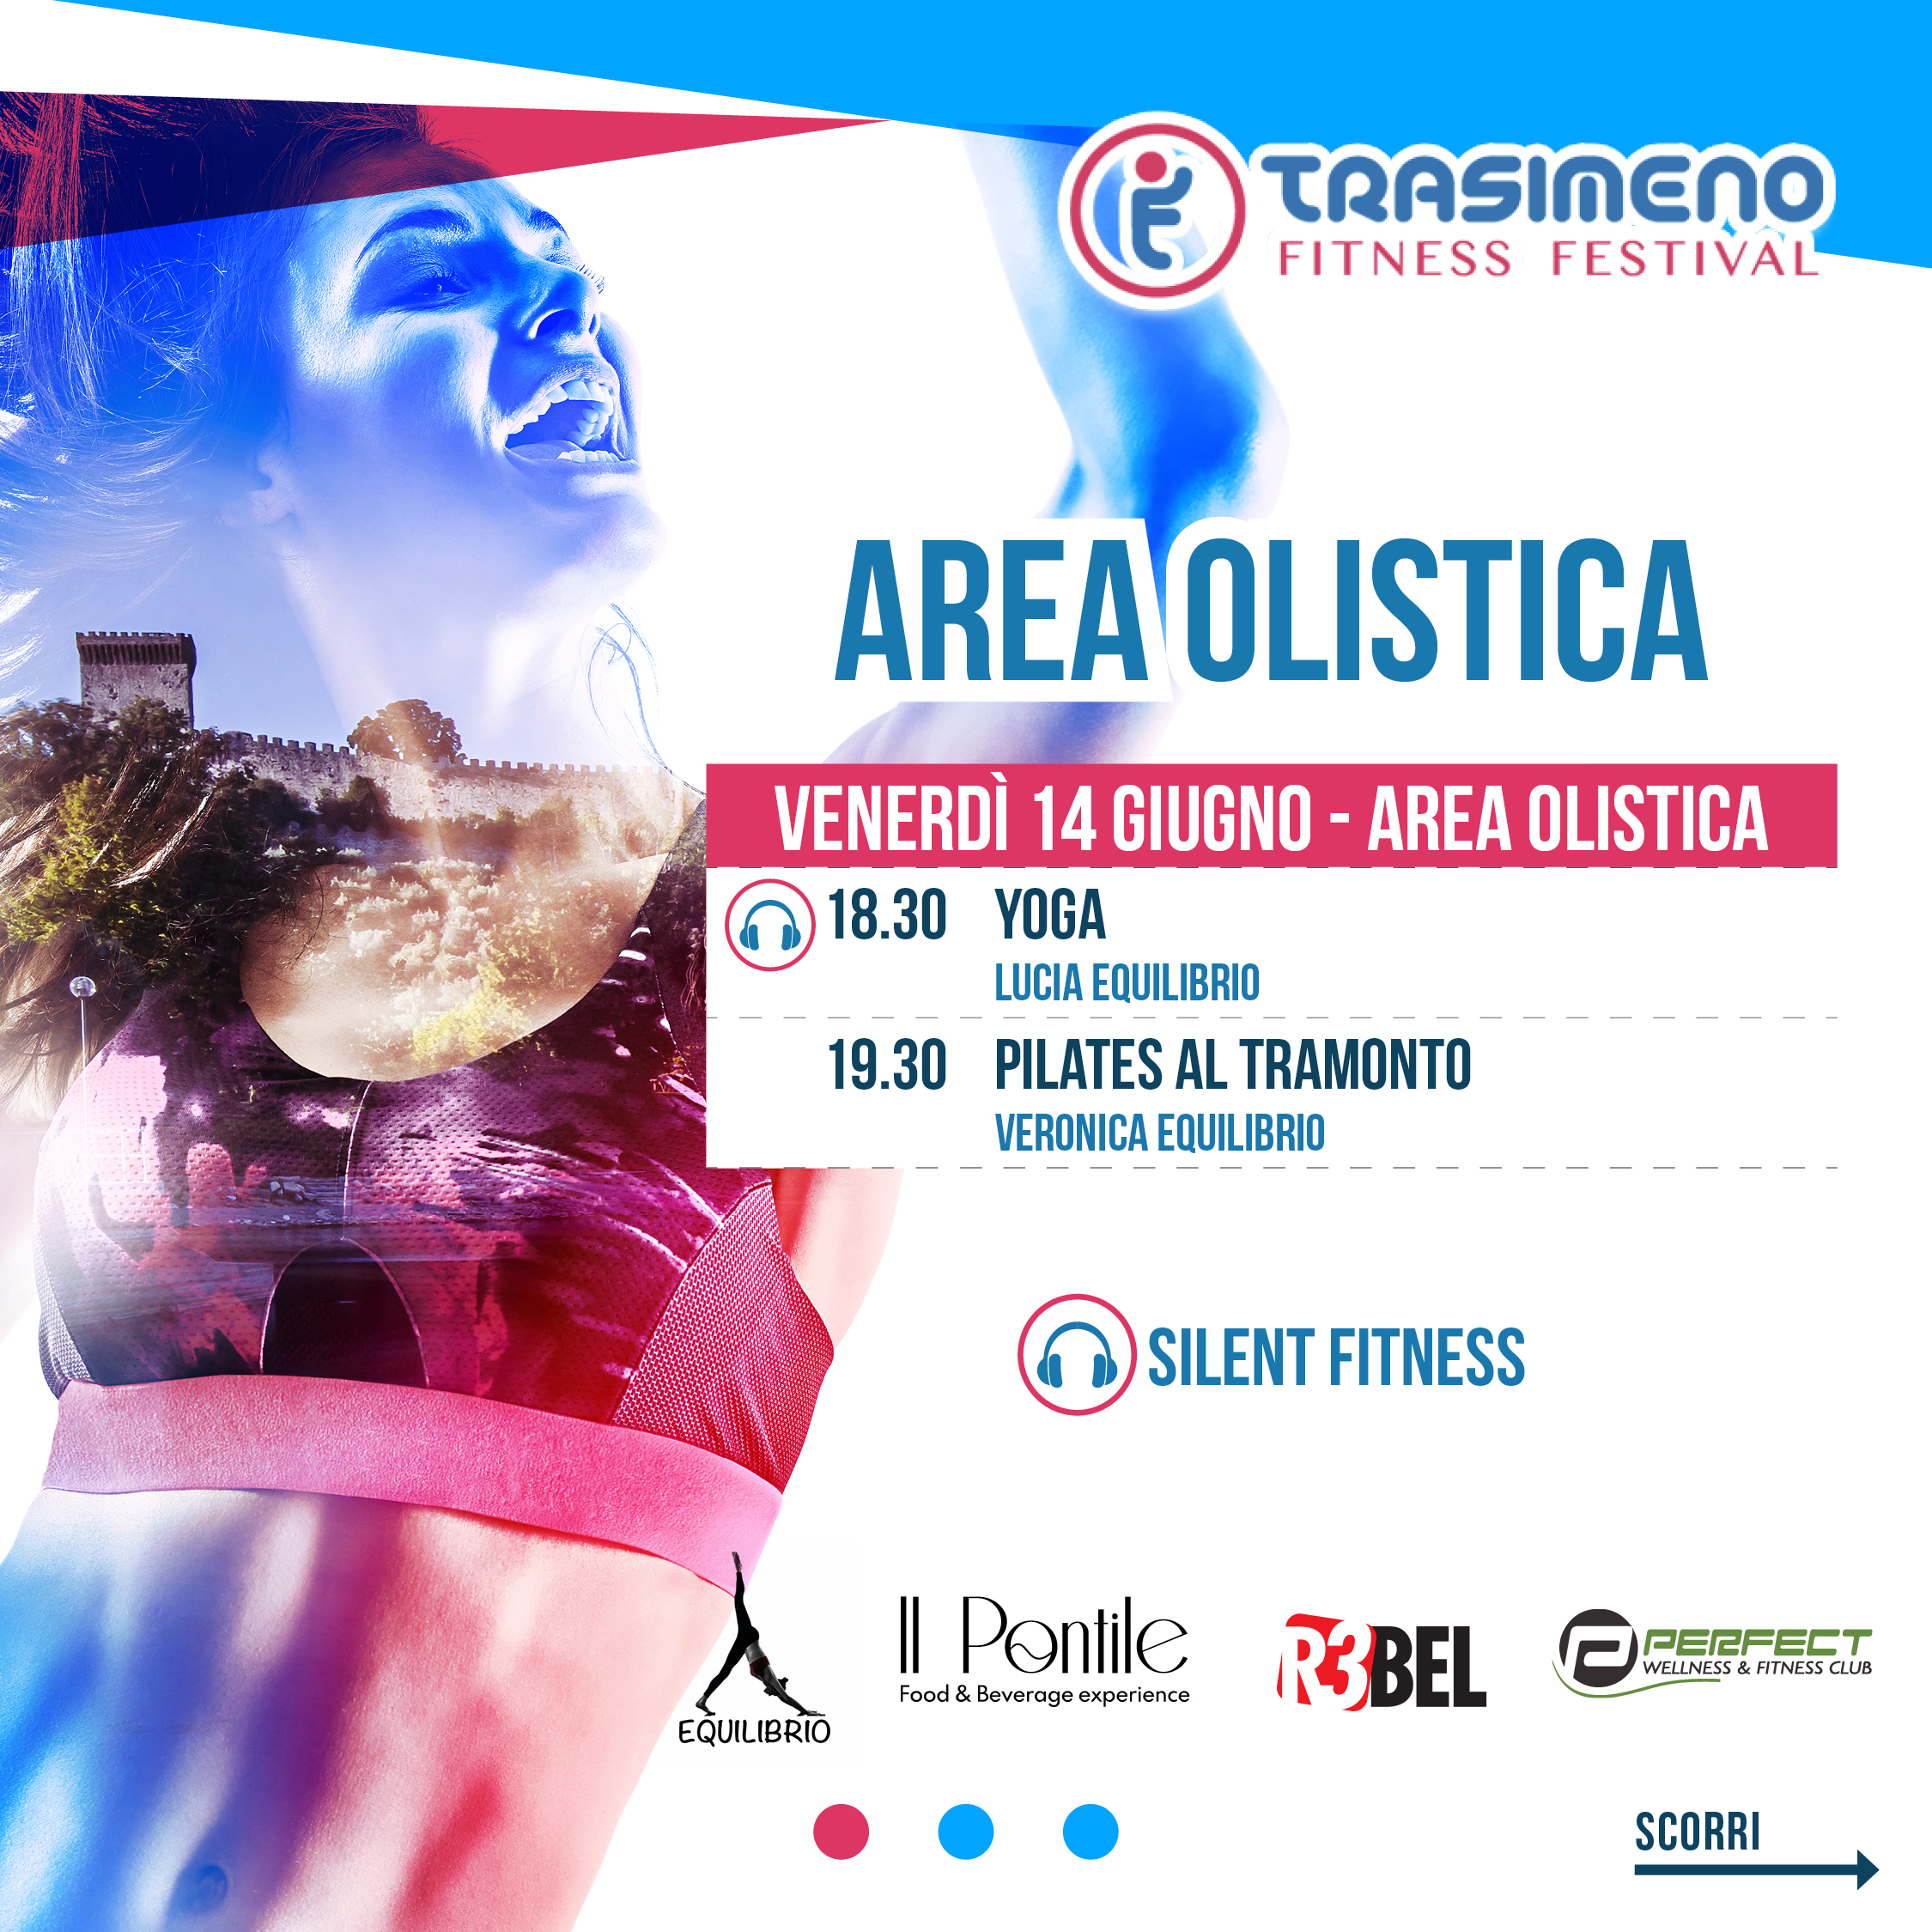 Programma Area Olistica - Trasimeno Fitness Festival - Palestra Perfect (2)